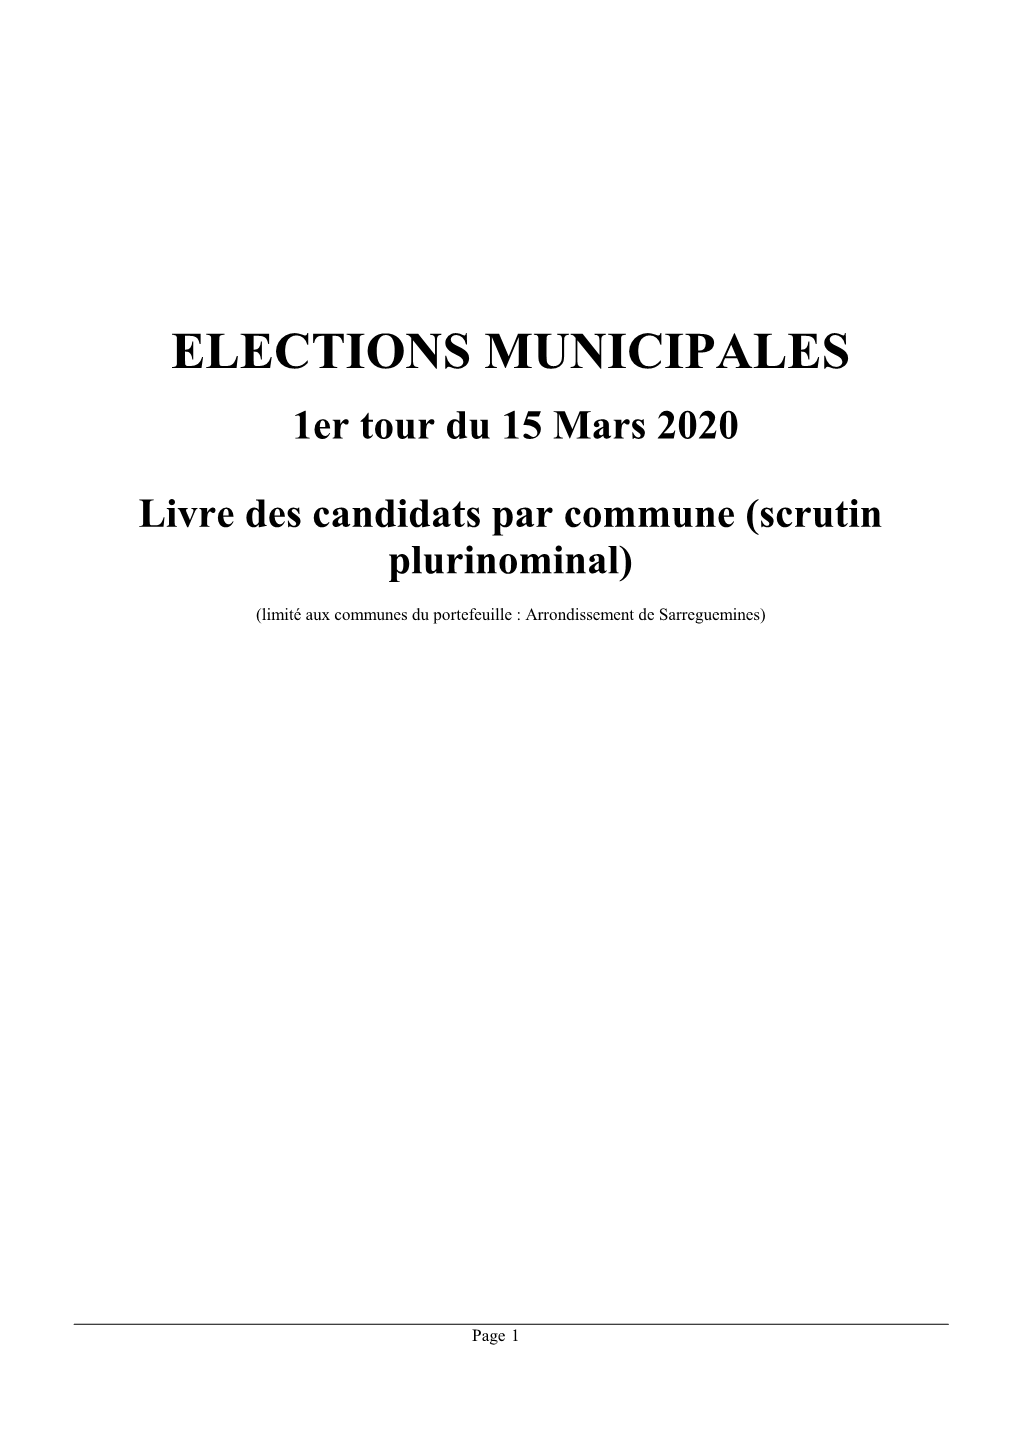 ELECTIONS MUNICIPALES 1Er Tour Du 15 Mars 2020